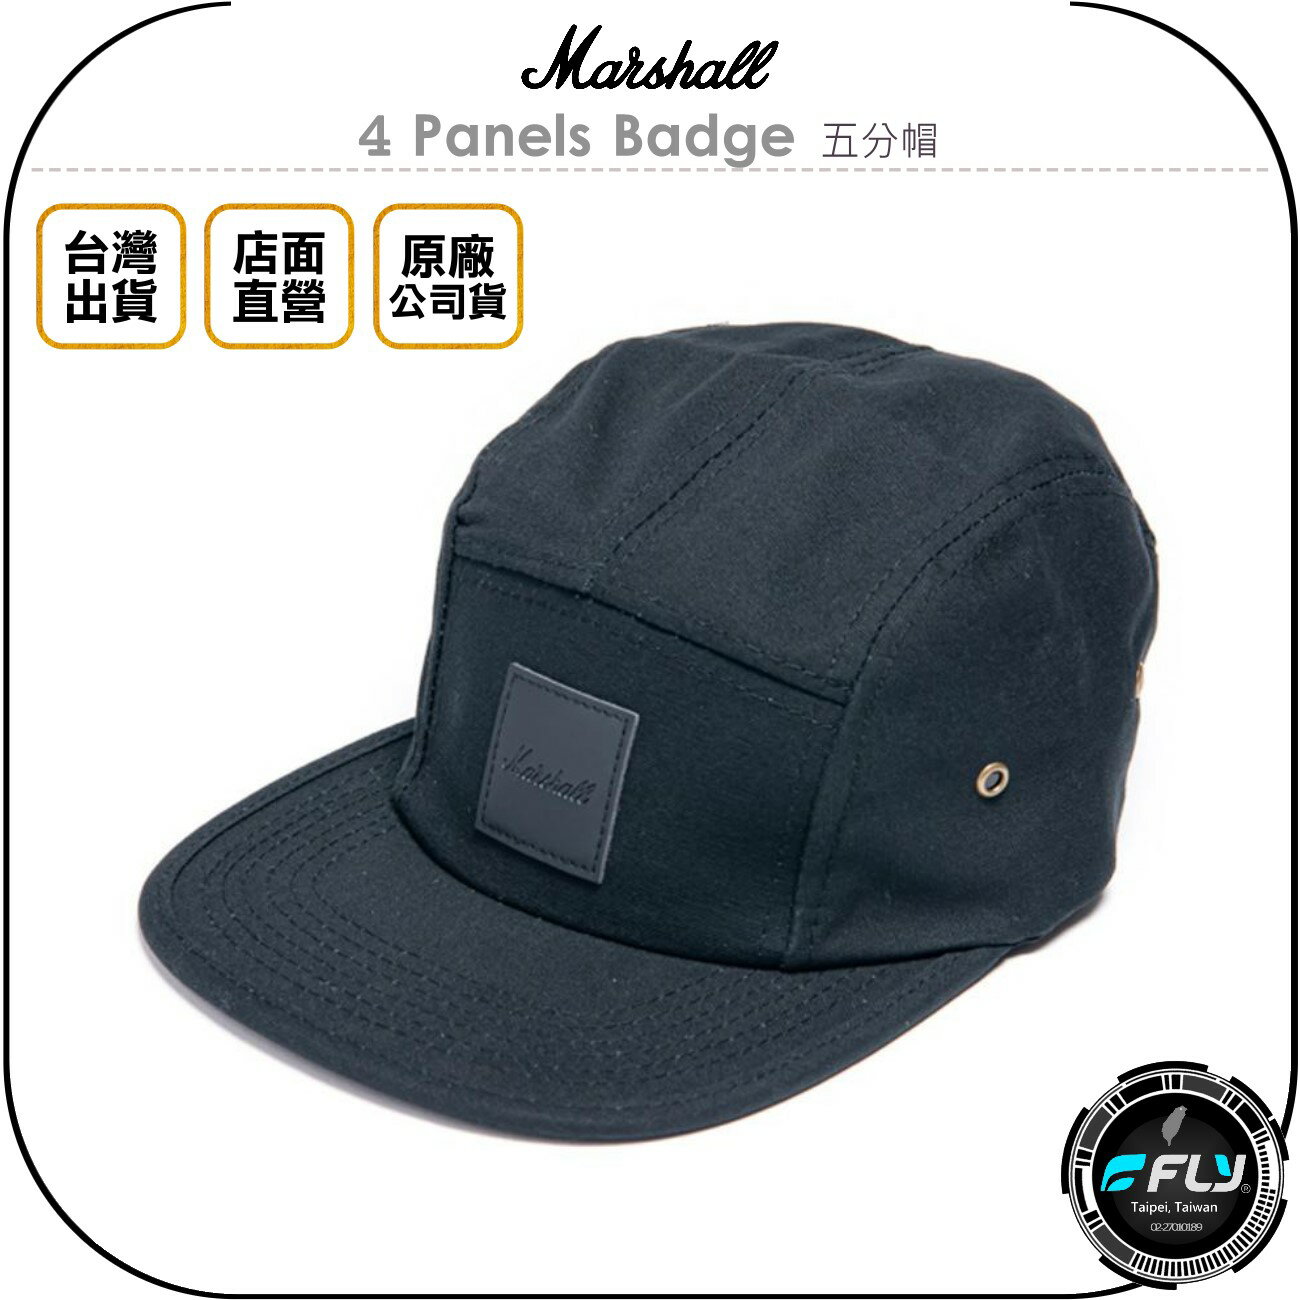 《飛翔無線3C》Marshall 4 Panels Badge 五分帽◉公司貨◉棉製成休閒帽◉經典棒球帽◉皮革徽章